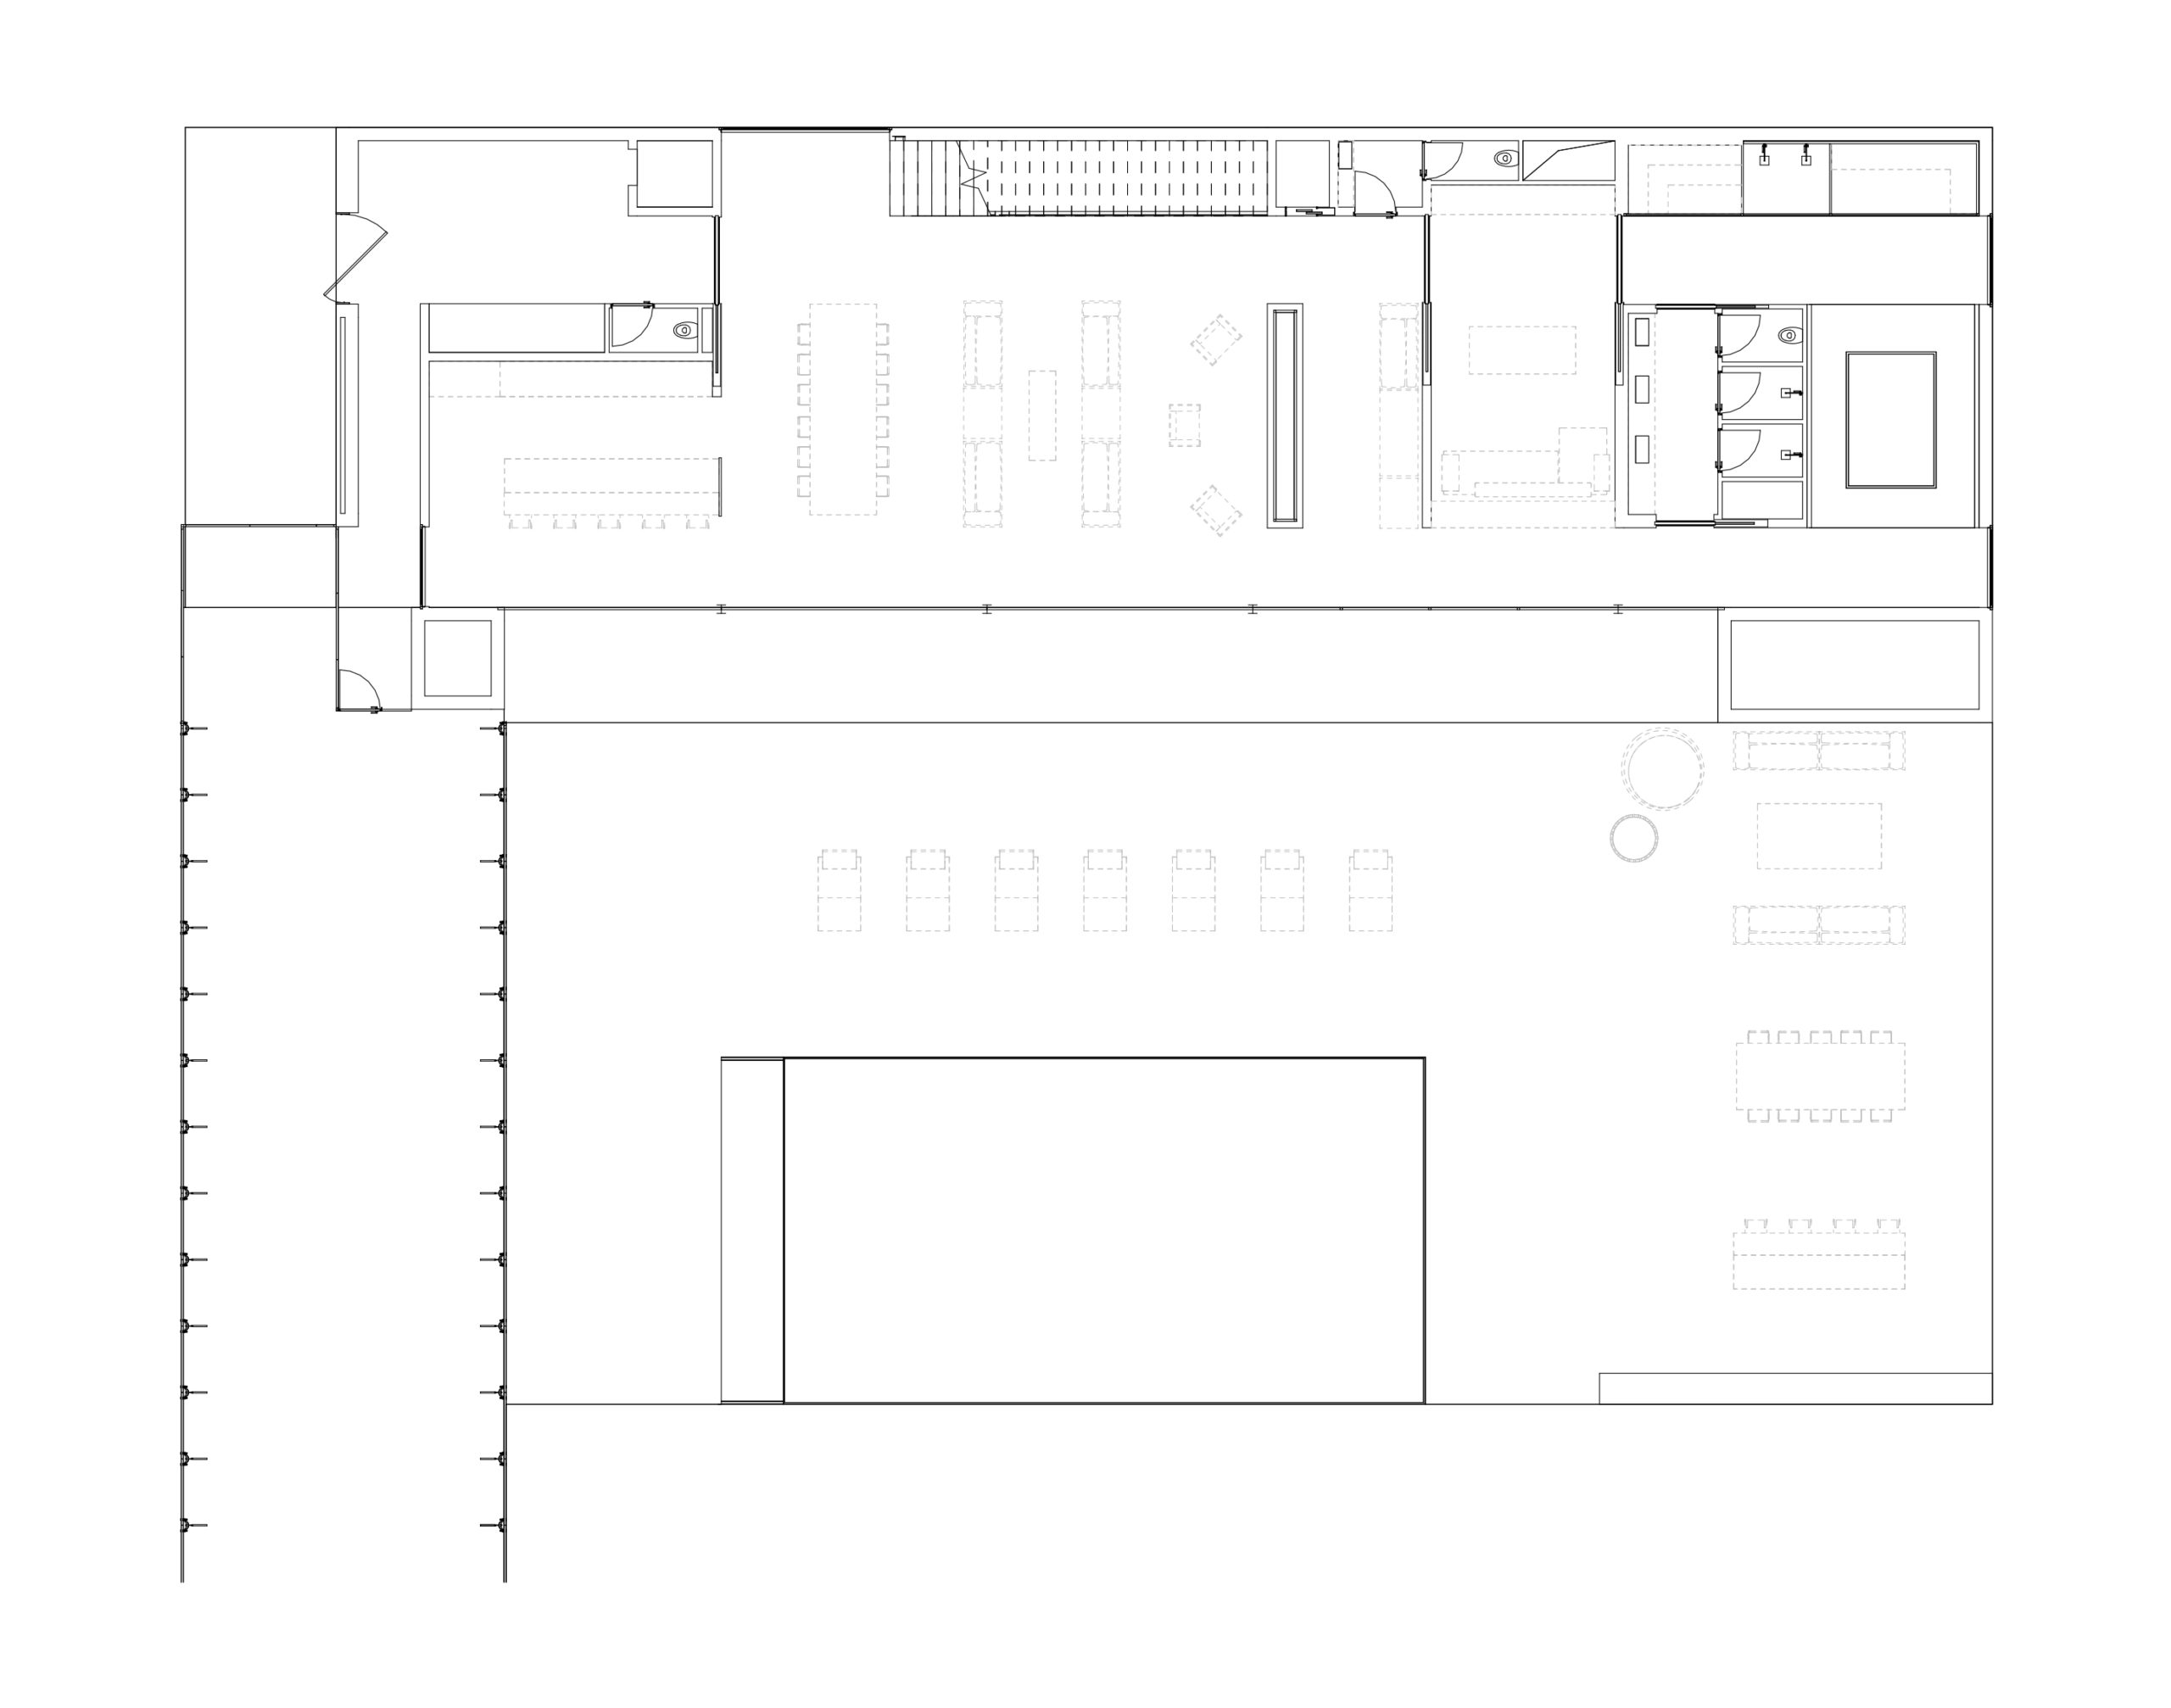 Plan au trait noir et blanc du rez-de-chaussée de la villa Nollet